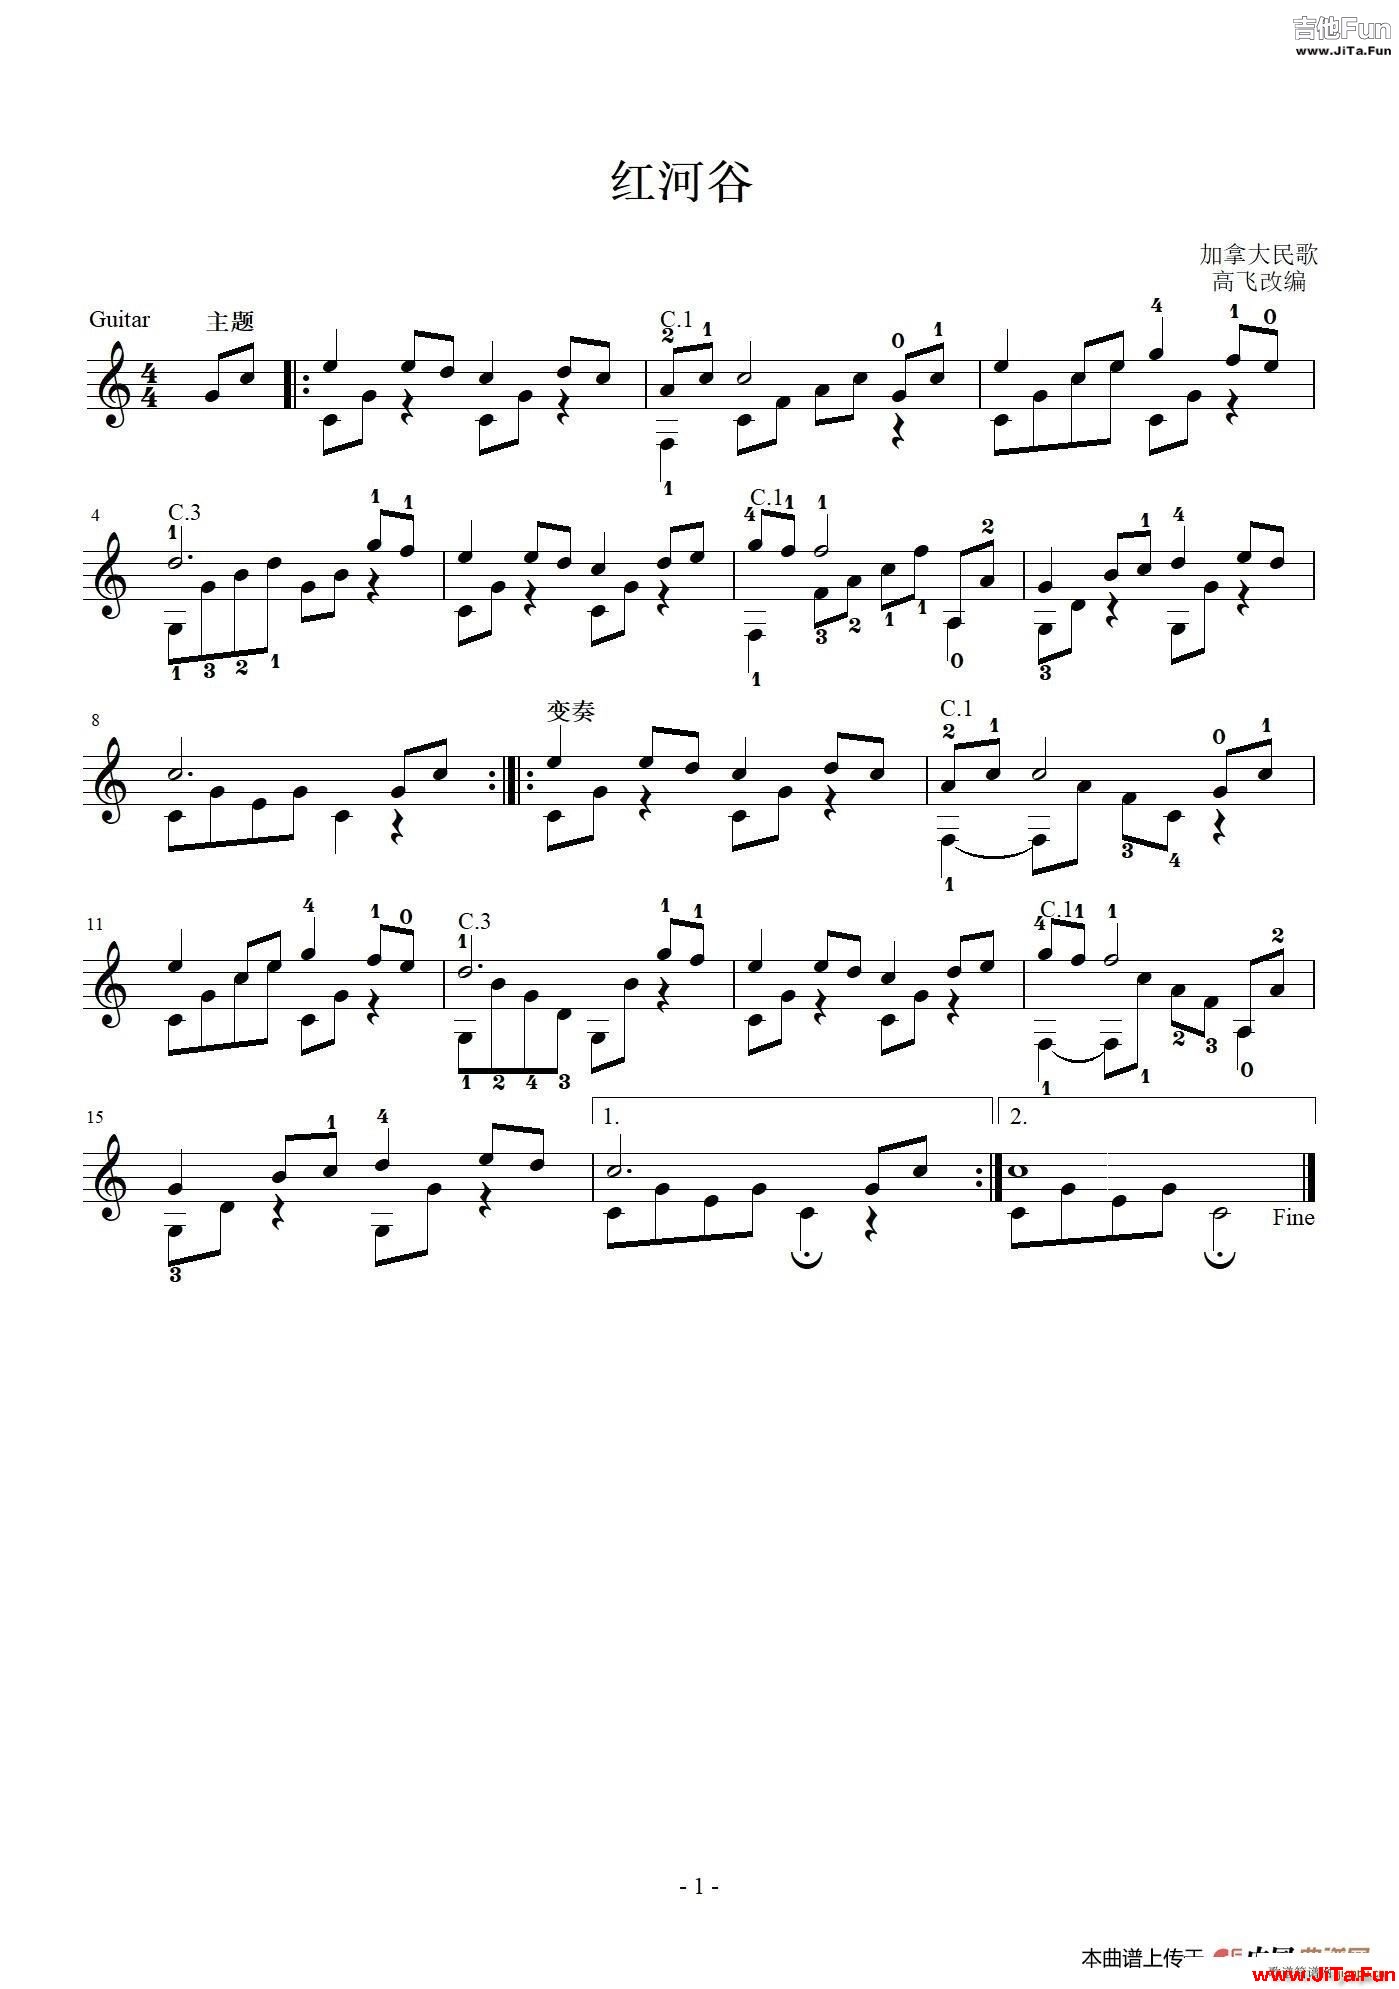 紅河谷 古典吉他獨奏譜(吉他譜)1